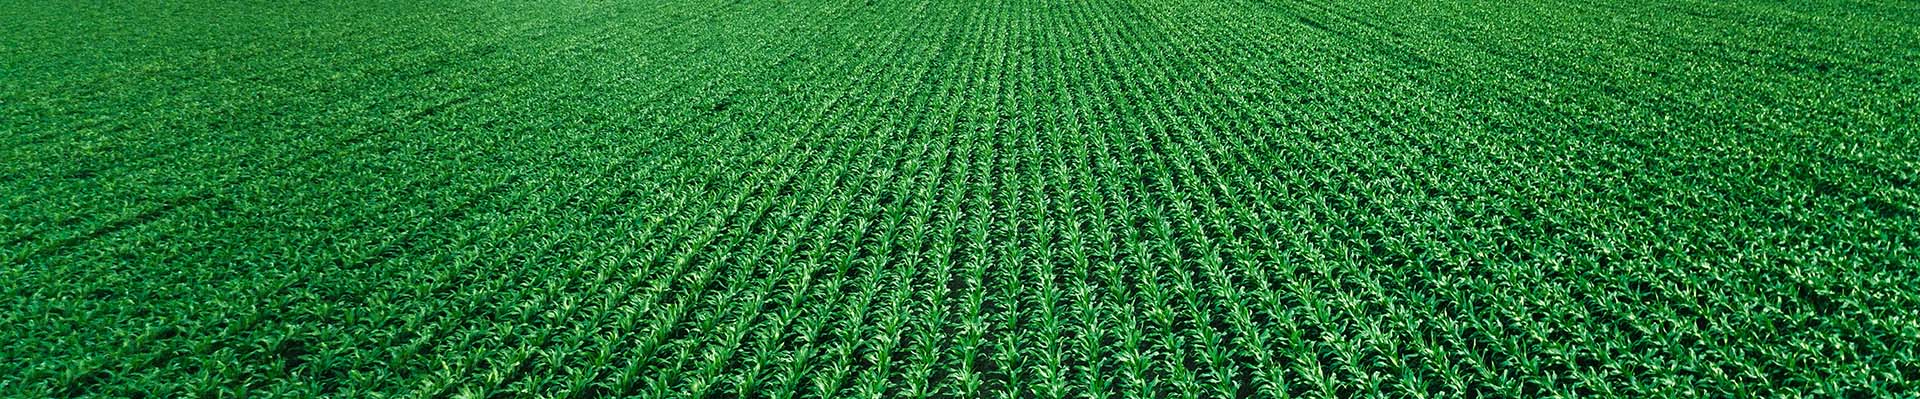 A green corn field